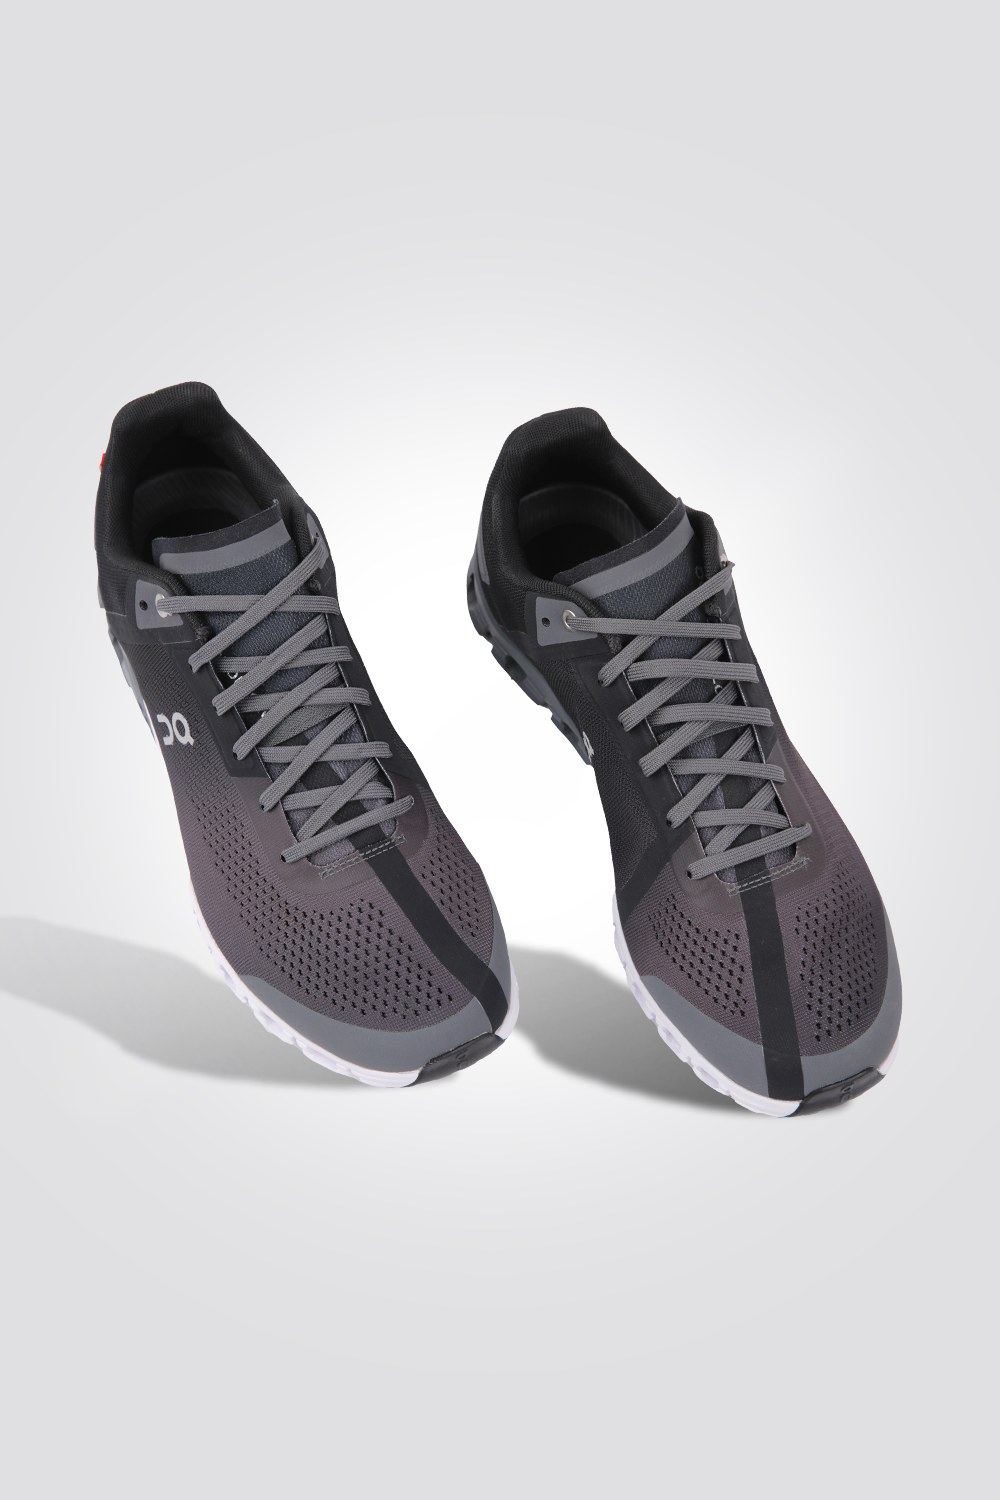 נעלי ספורט לגברים Cloudflow  Asphalt M 8 בצבע שחור ואפור